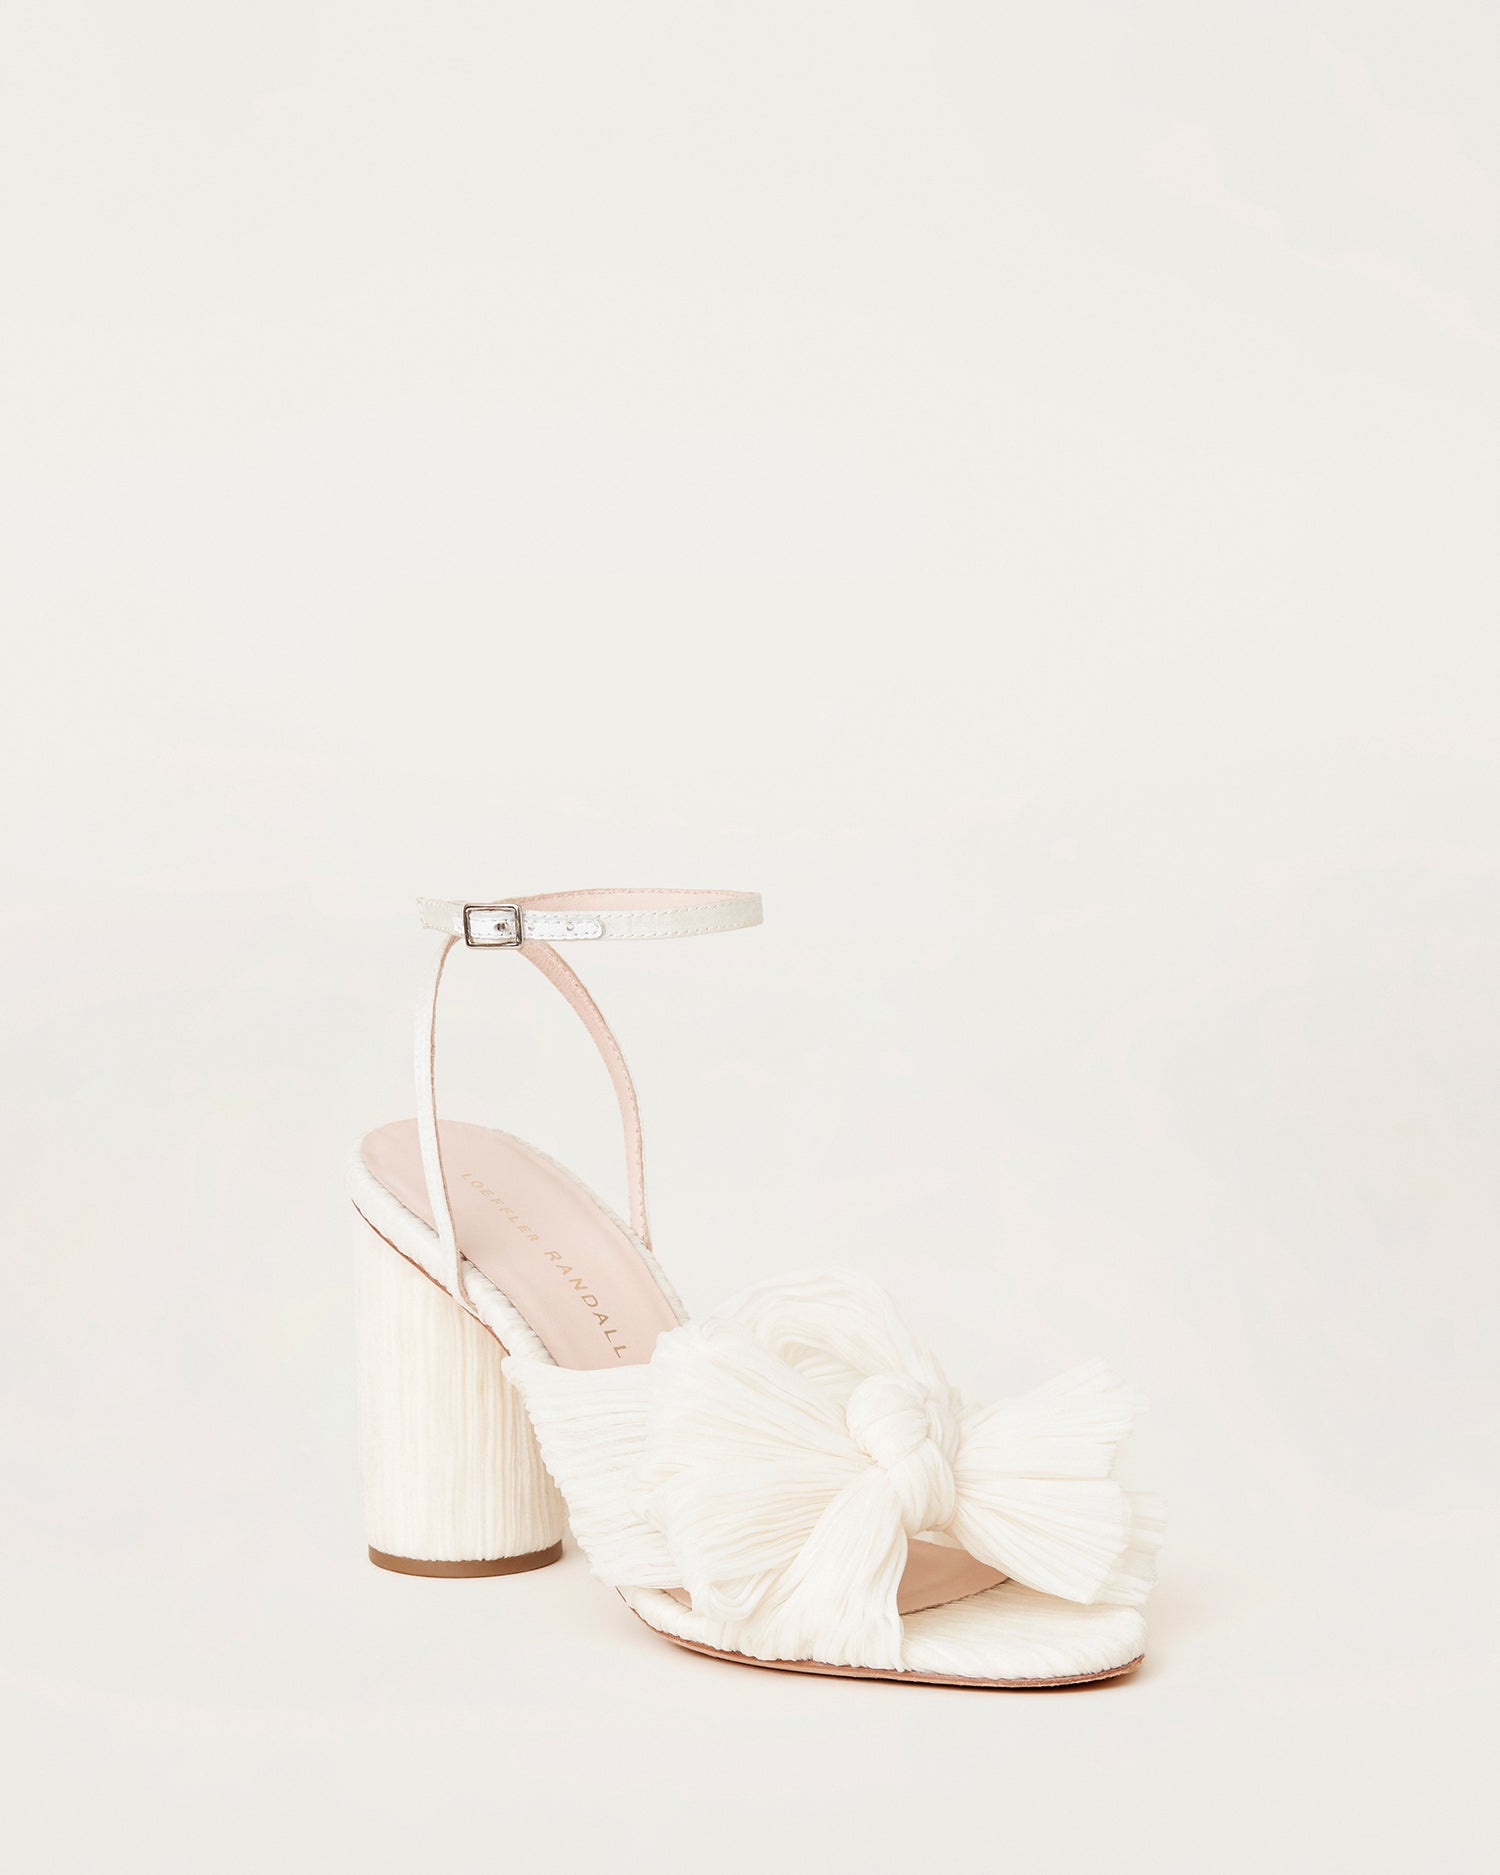 2.5 Inch White Flared Heels, Women's Fashion, Footwear, Heels on Carousell